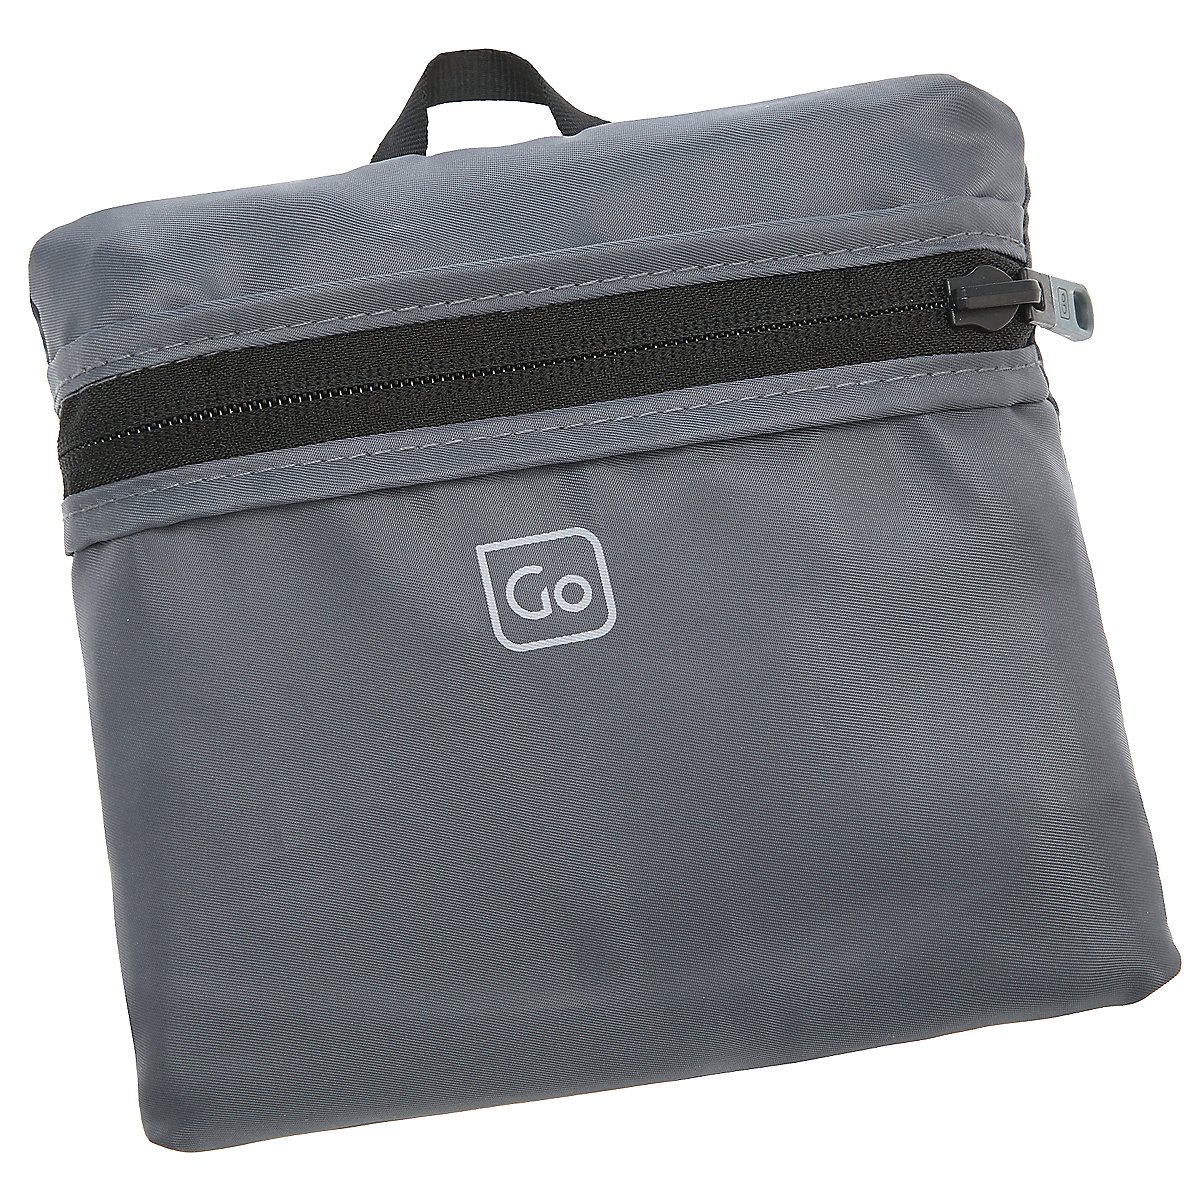 Design Go ReisezubehÃ¶r faltbare Reisetasche Tote Bag 50 cm - koffer ...